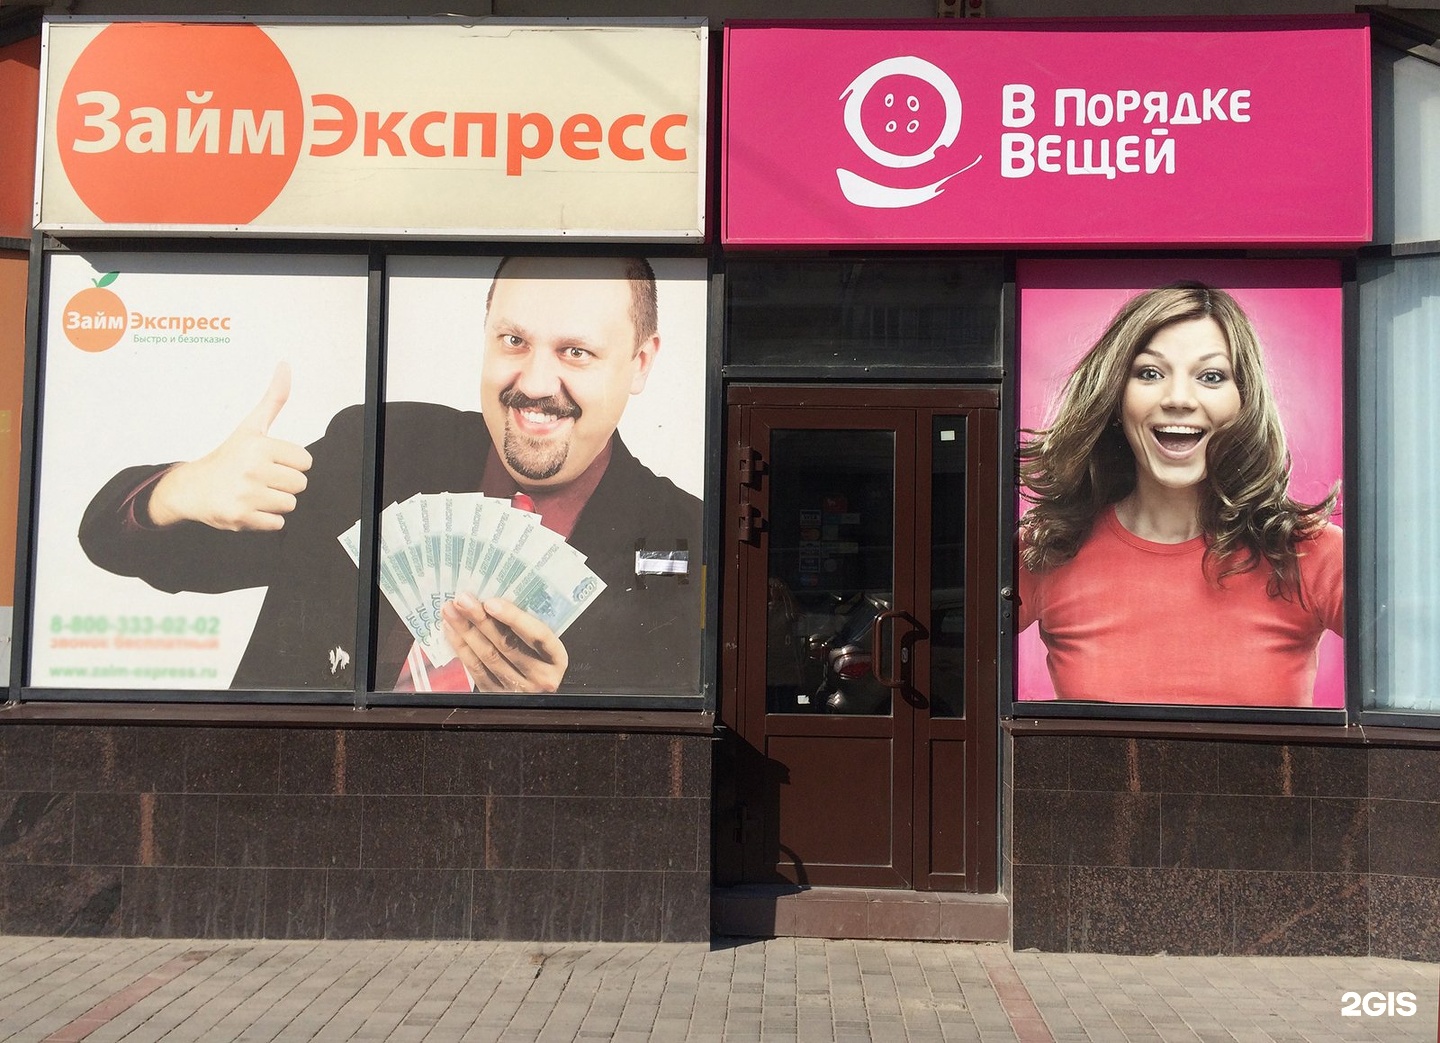 24 экспресс займ. Займ экспресс Коломенская фото. Банк пойдем на Краснознаменской Волгоград. Экспресс займ реклама.